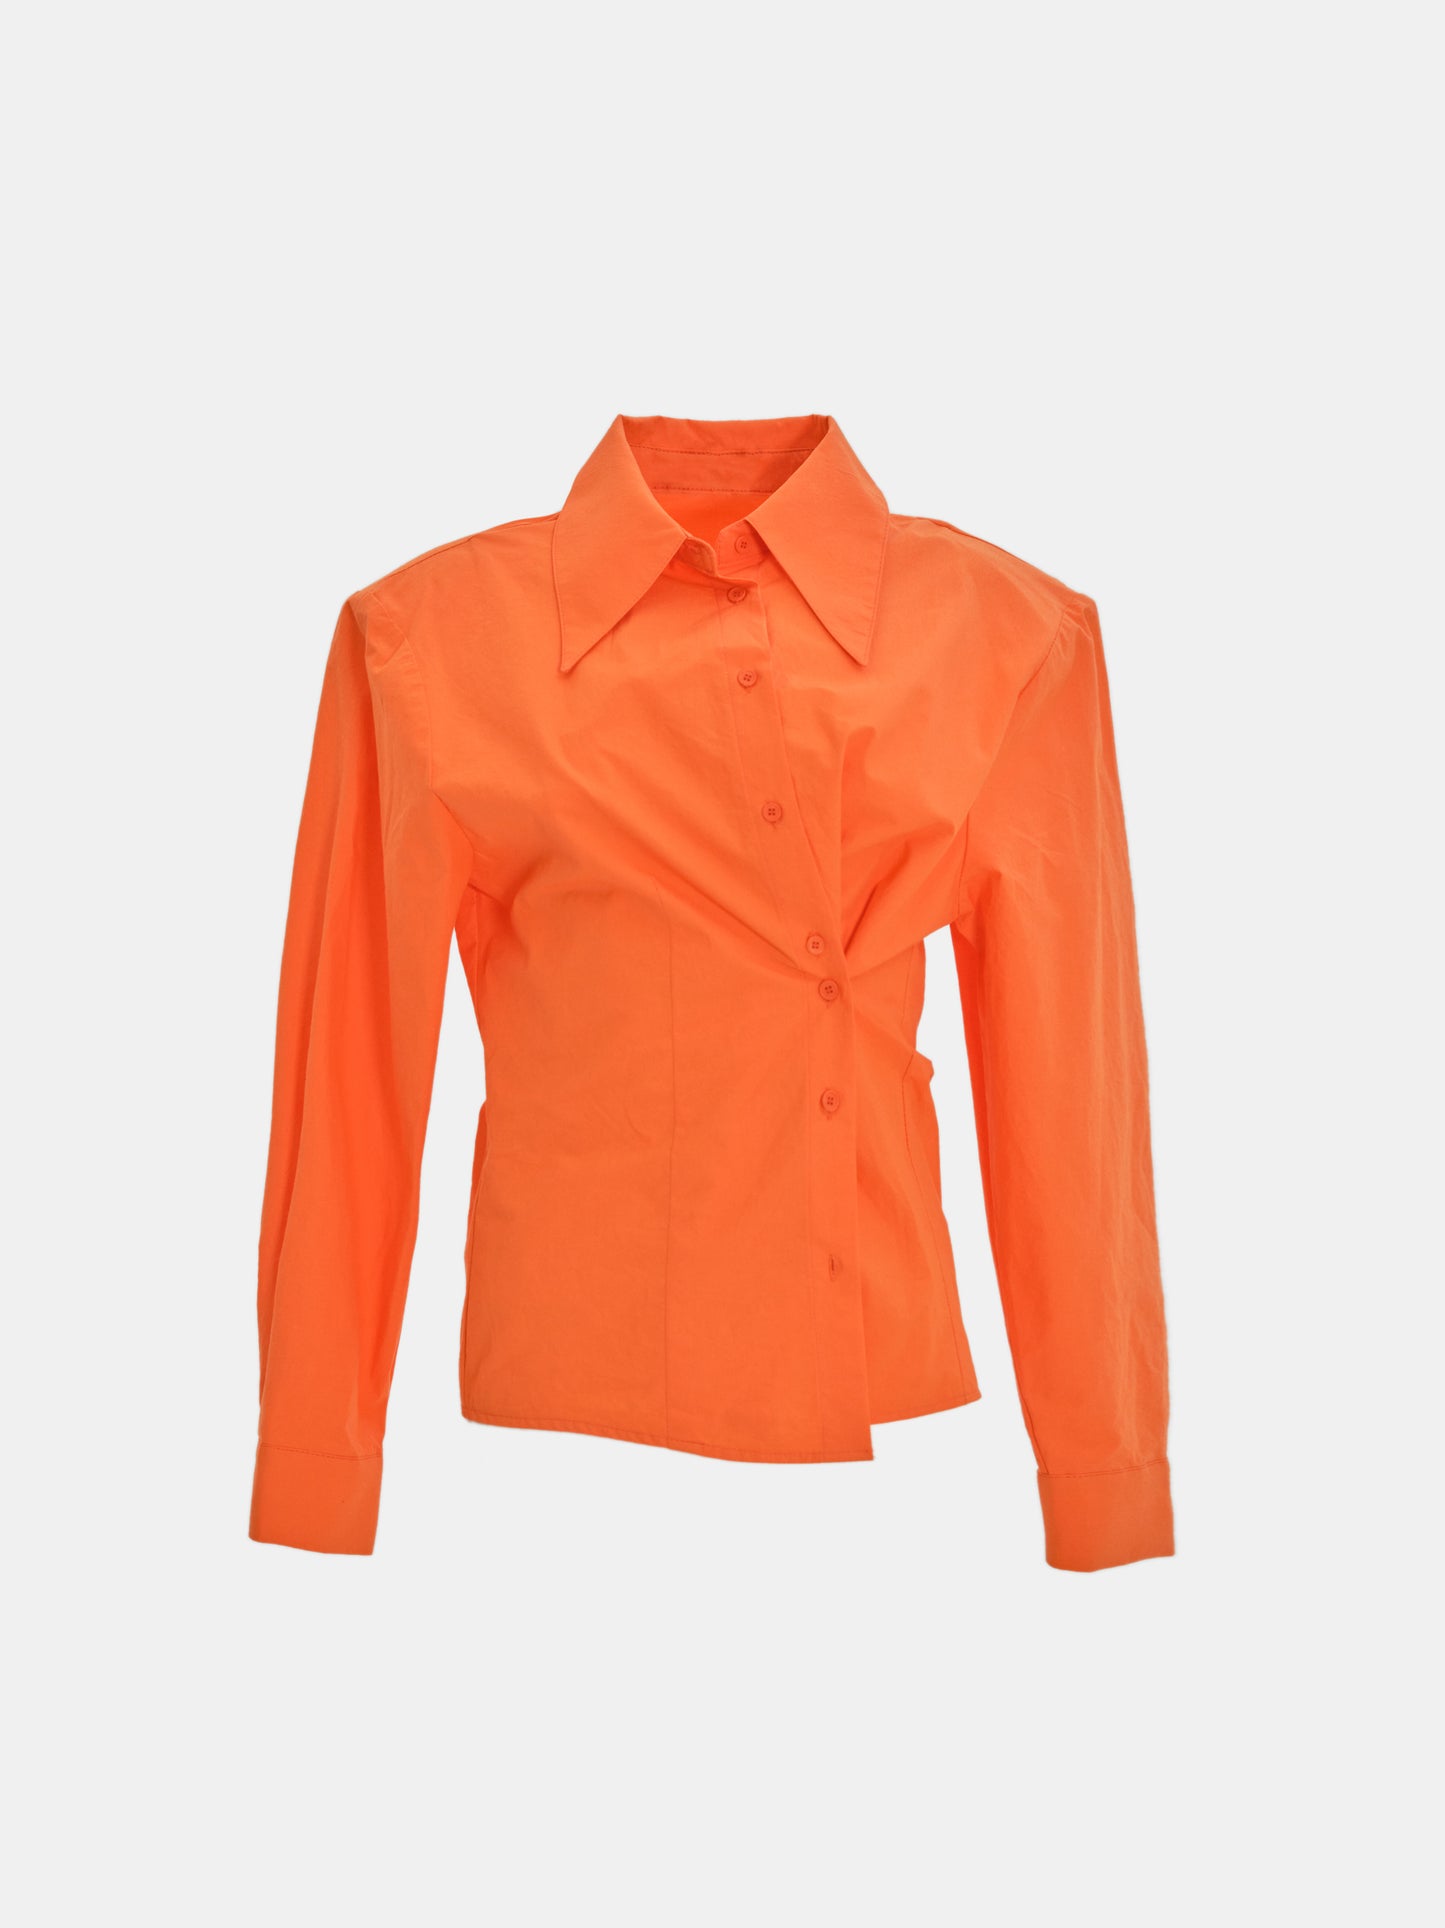 Twisted Shirt, Enamel Orange